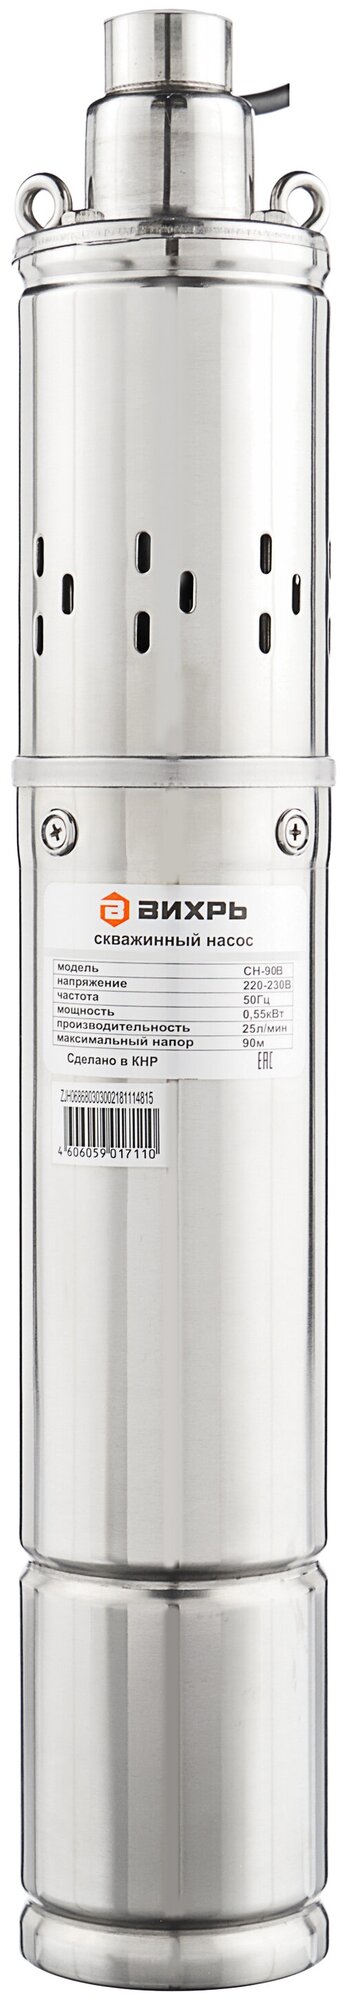 Скважинный насос ВИХРЬ СН-90В (550 Вт)